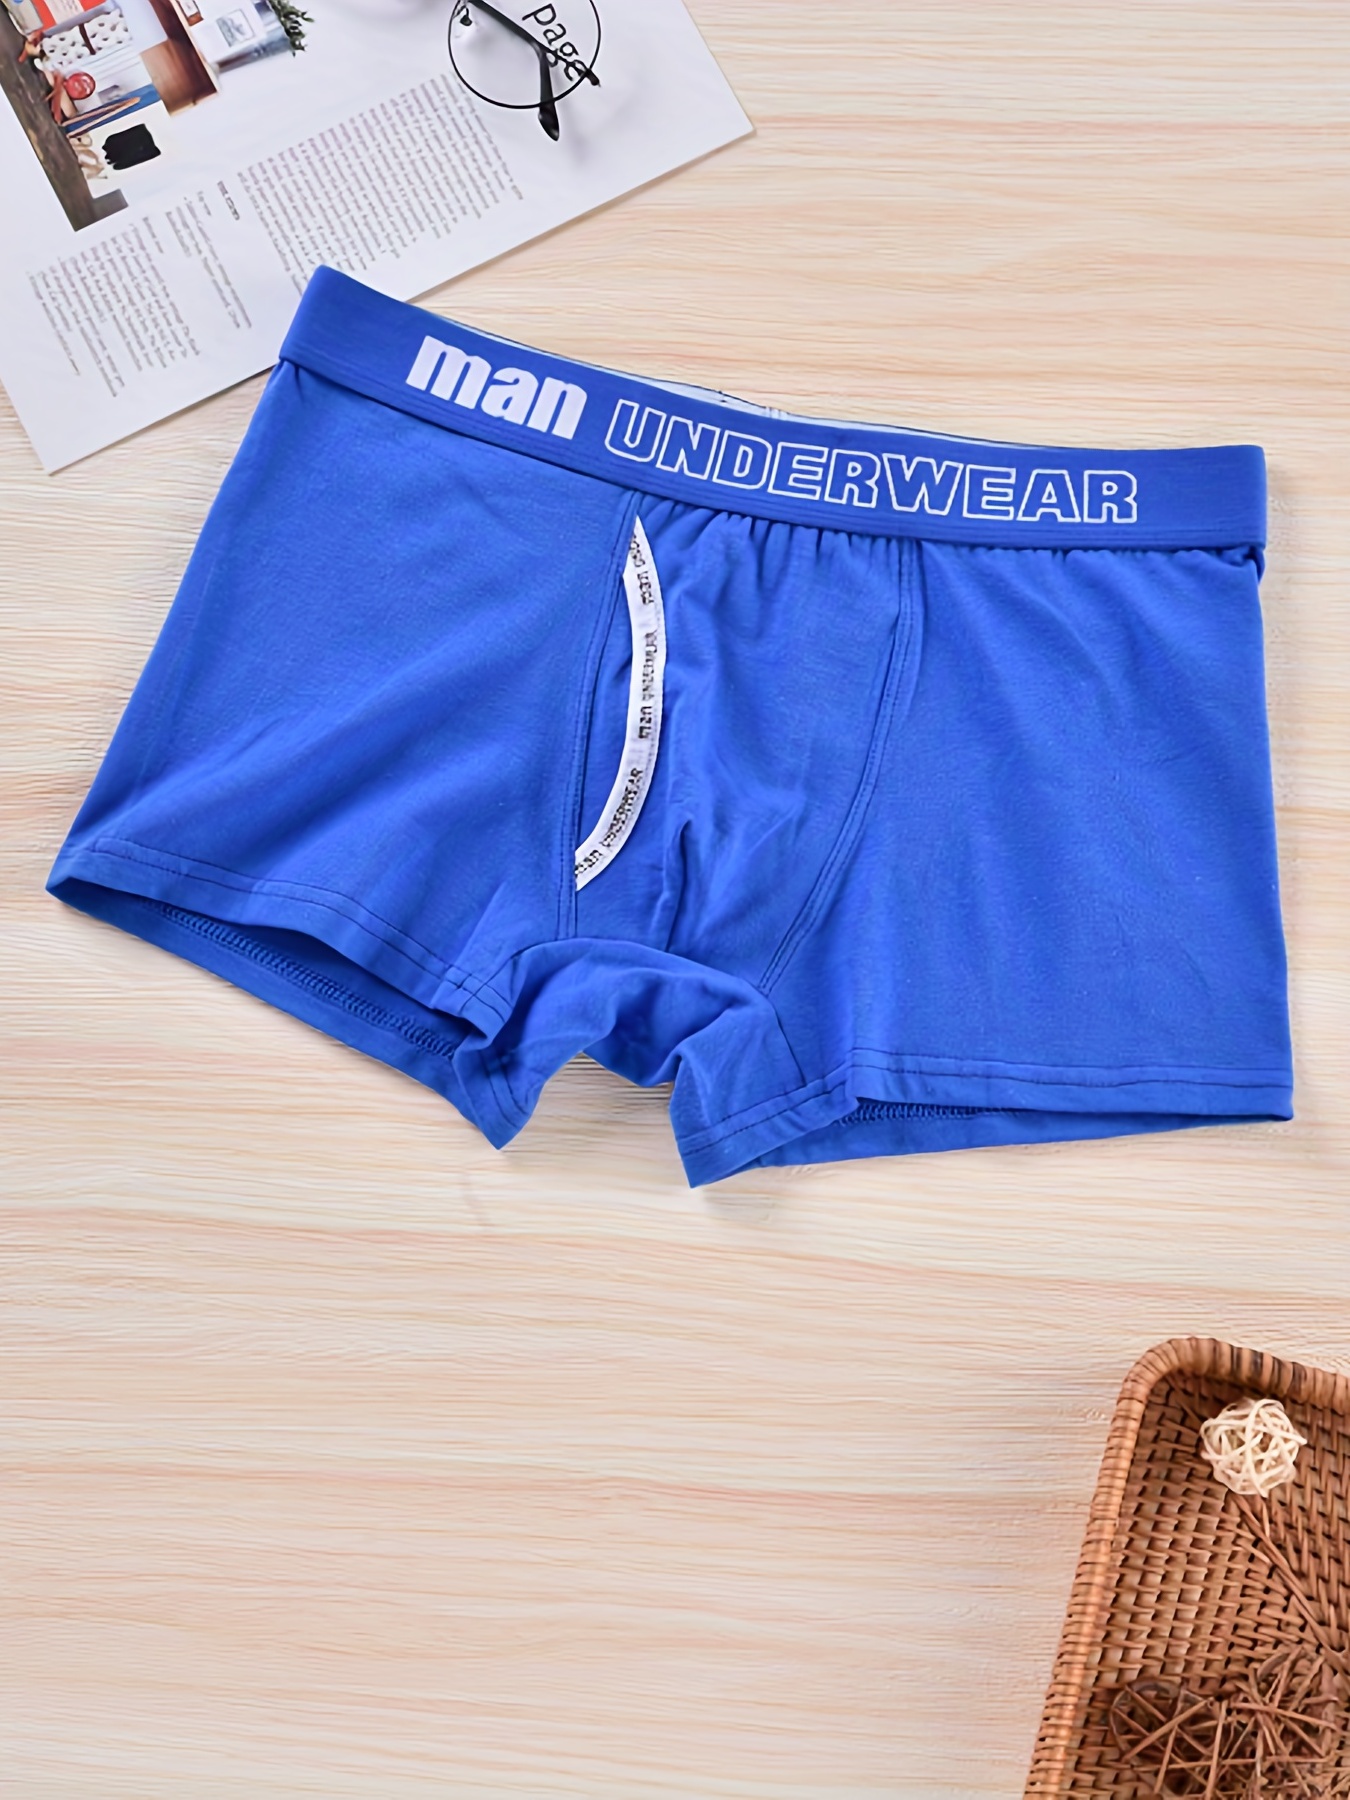 3pcs/lot Cotton men's underwear men's trendy boxer shorts solid color  simple comfortable breathable sporty Boxer shorts - AliExpress